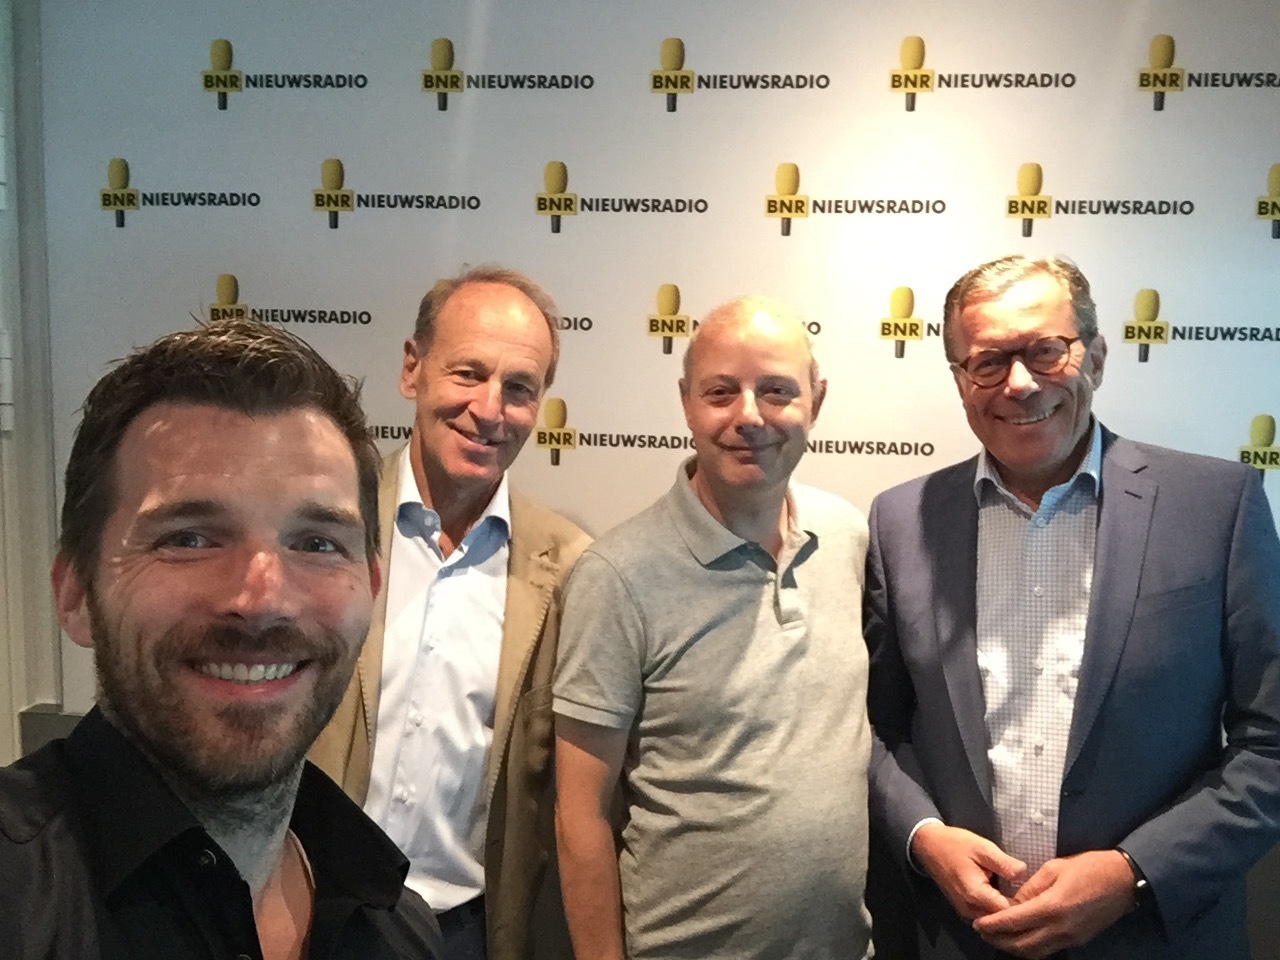 V.l.n.r. John-Boy Vossen, Henk Schulte Nordholt, Mark Beekhuis, Dirk Jan van den Berg